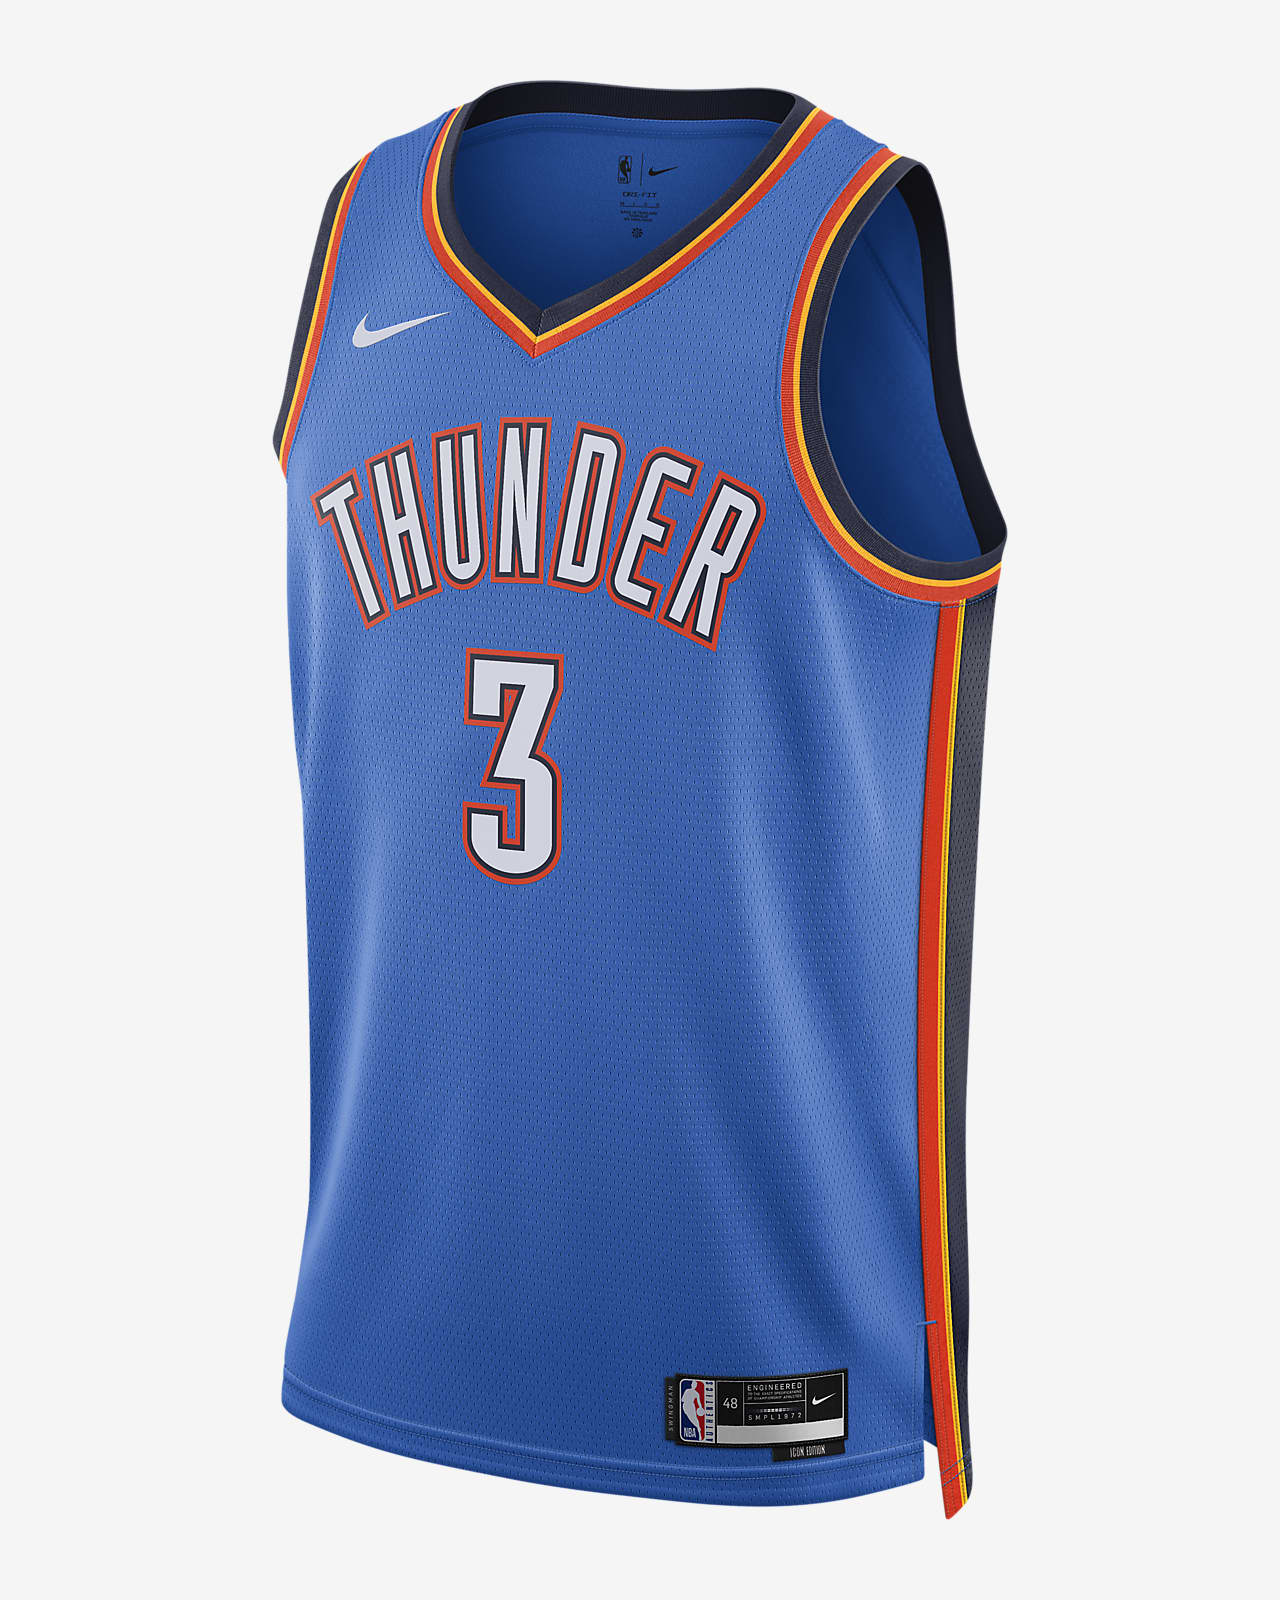 Thunder, Nike release uniform design